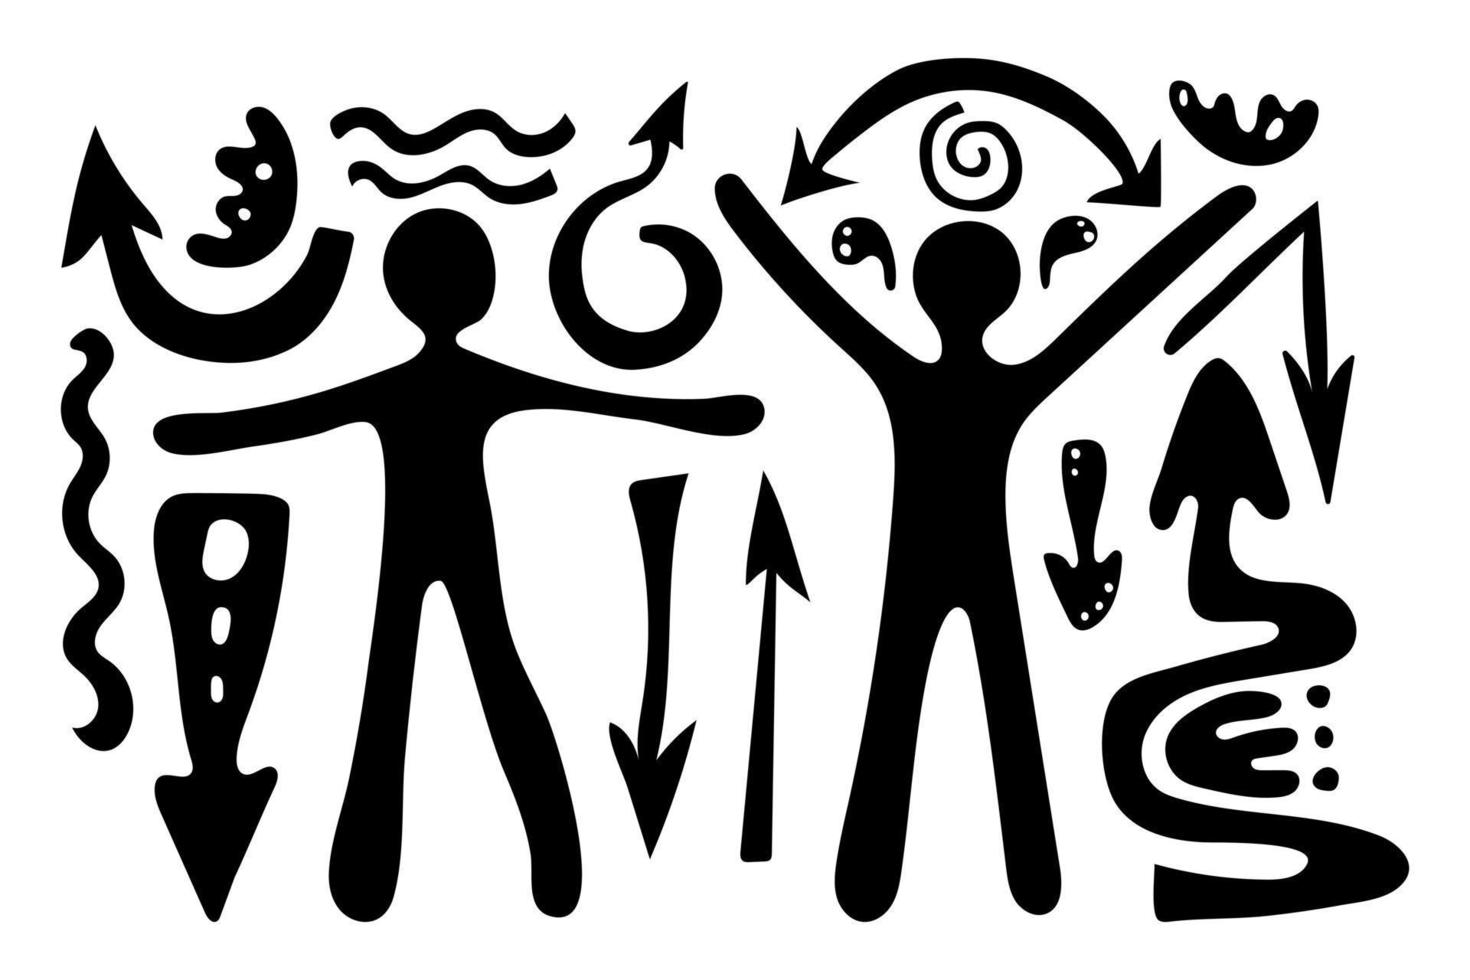 primitivo étnico petroglifos grande conjunto dibujo de persona, humano cifra, flechas, líneas, espirales antiguo tribu, Roca edad. diseño elemento para textiles, papel, telas, tarjeta postal. vector ilustración